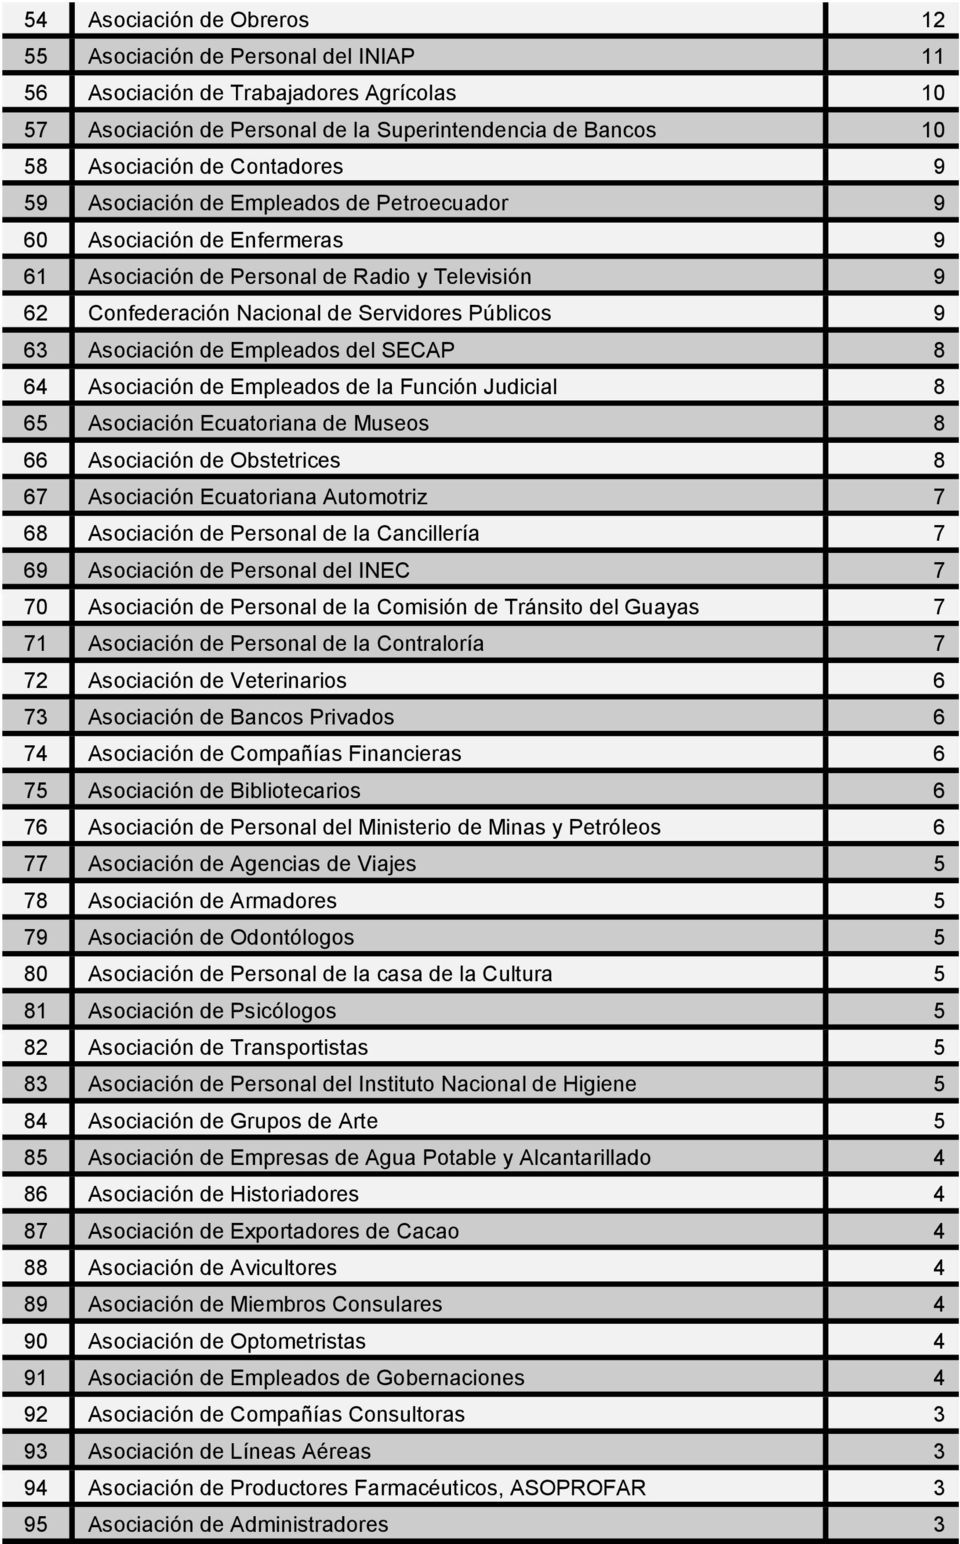 Empleados del SECAP 8 64 Asociación de Empleados de la Función Judicial 8 65 Asociación Ecuatoriana de Museos 8 66 Asociación de Obstetrices 8 67 Asociación Ecuatoriana Automotriz 7 68 Asociación de